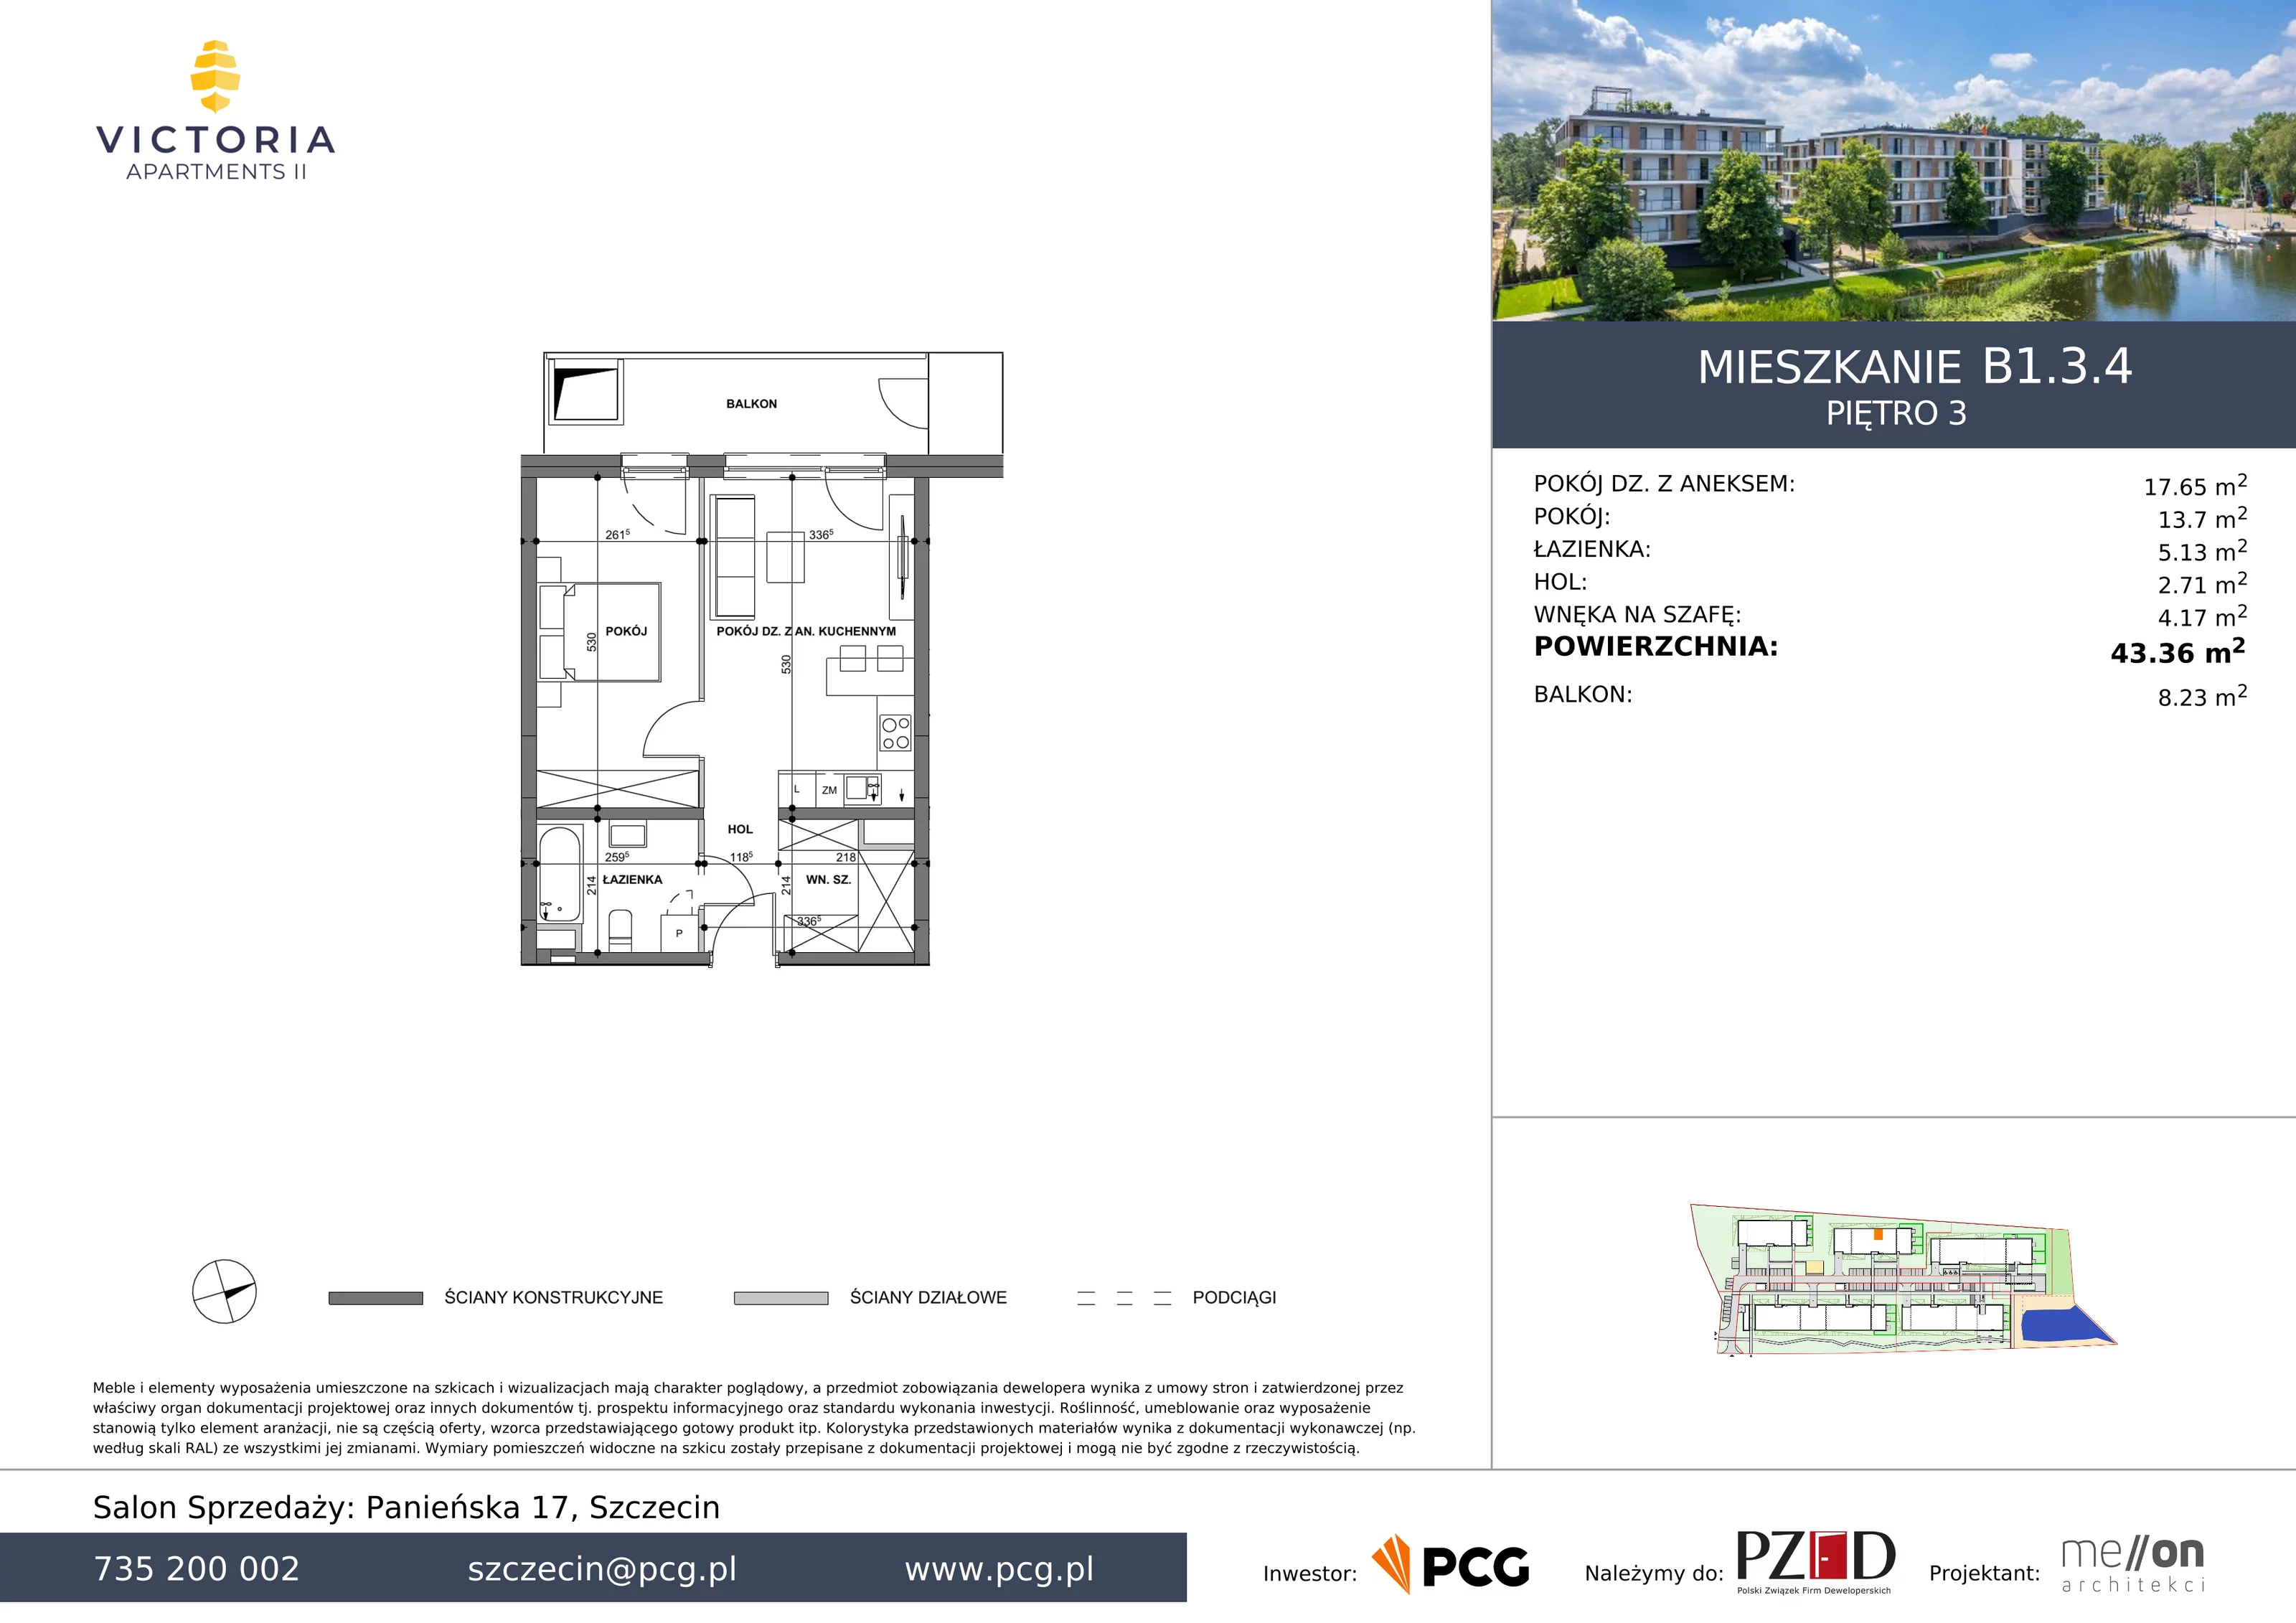 Apartament 43,36 m², piętro 3, oferta nr B1.3.4, Victoria Apartments II, Szczecin, Prawobrzeże, Dąbie, ul. Przestrzenna